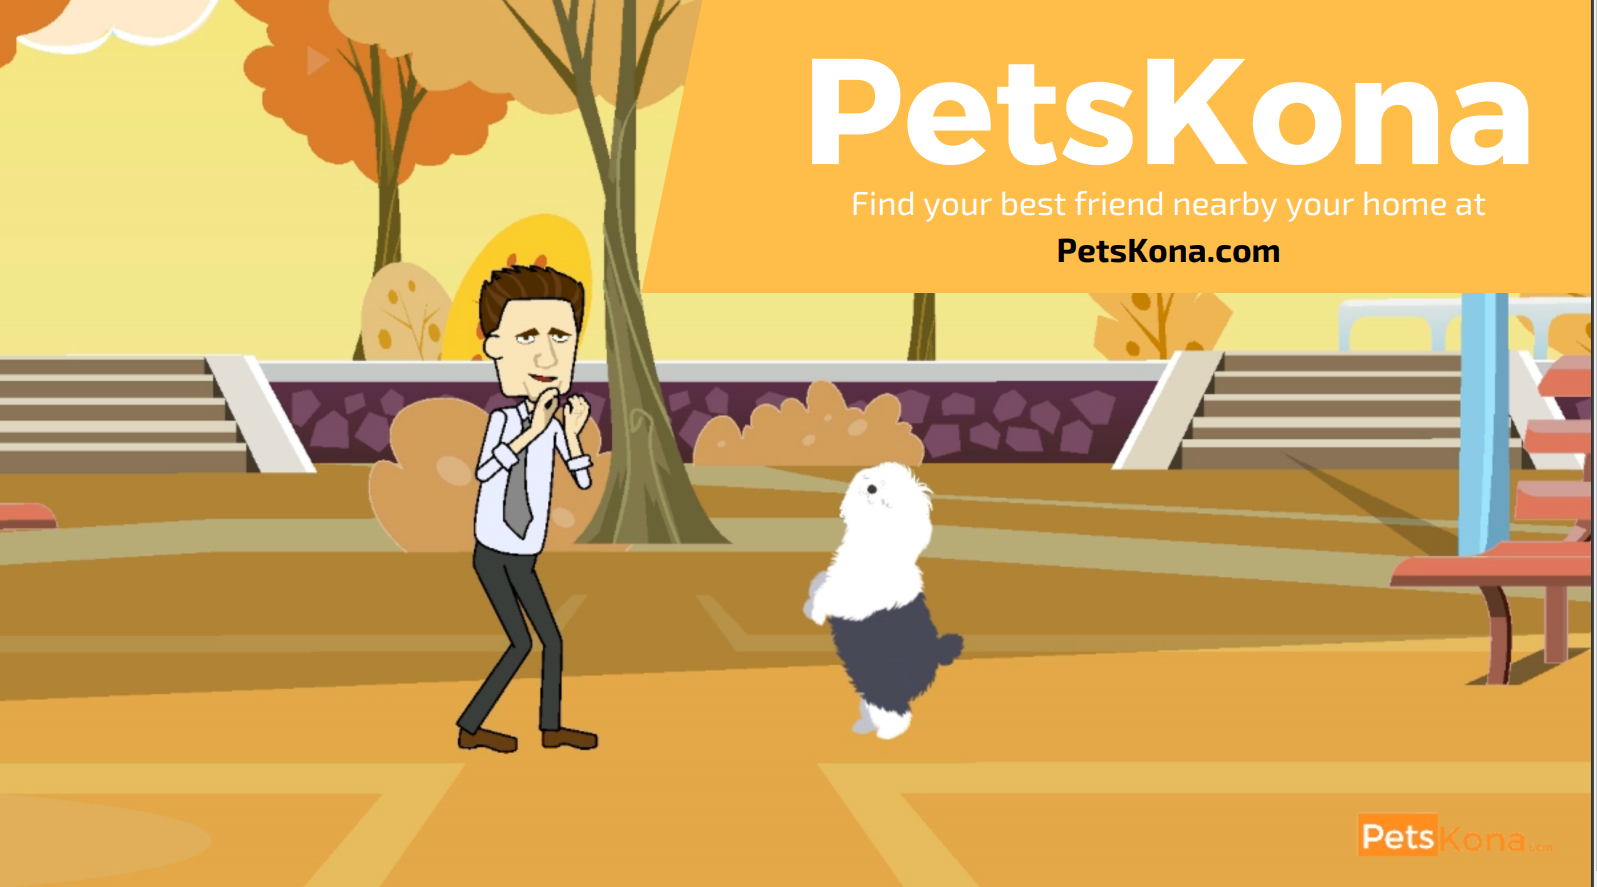 PetsKona.com | An Online Ad Platform for Pets